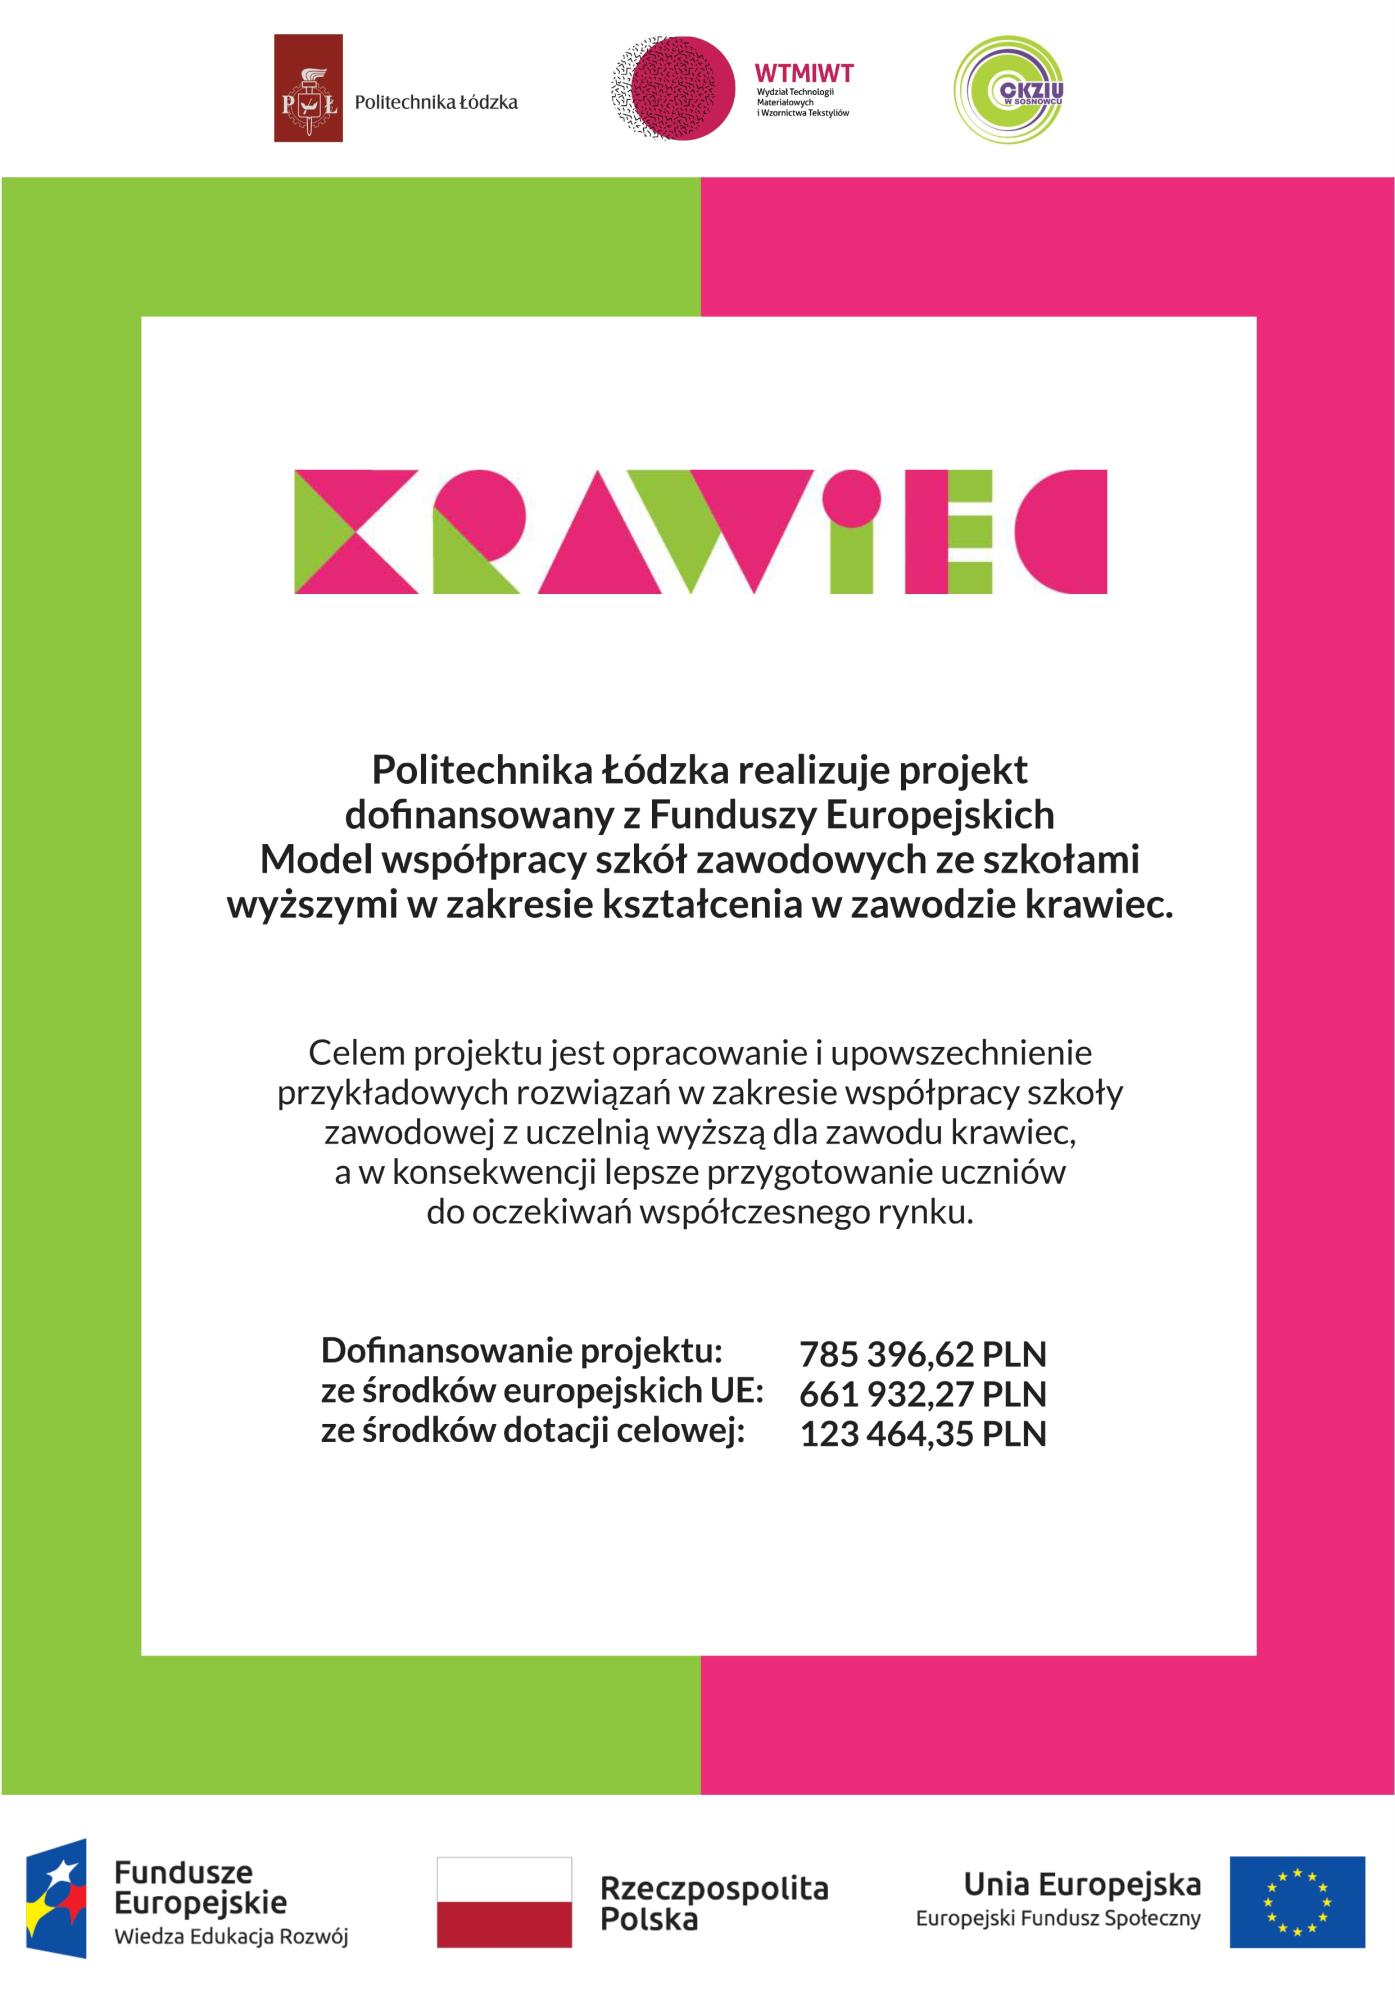 Plakat projektu KRAWIEC - informacja o dofinansowaniu z funduszu unijnego